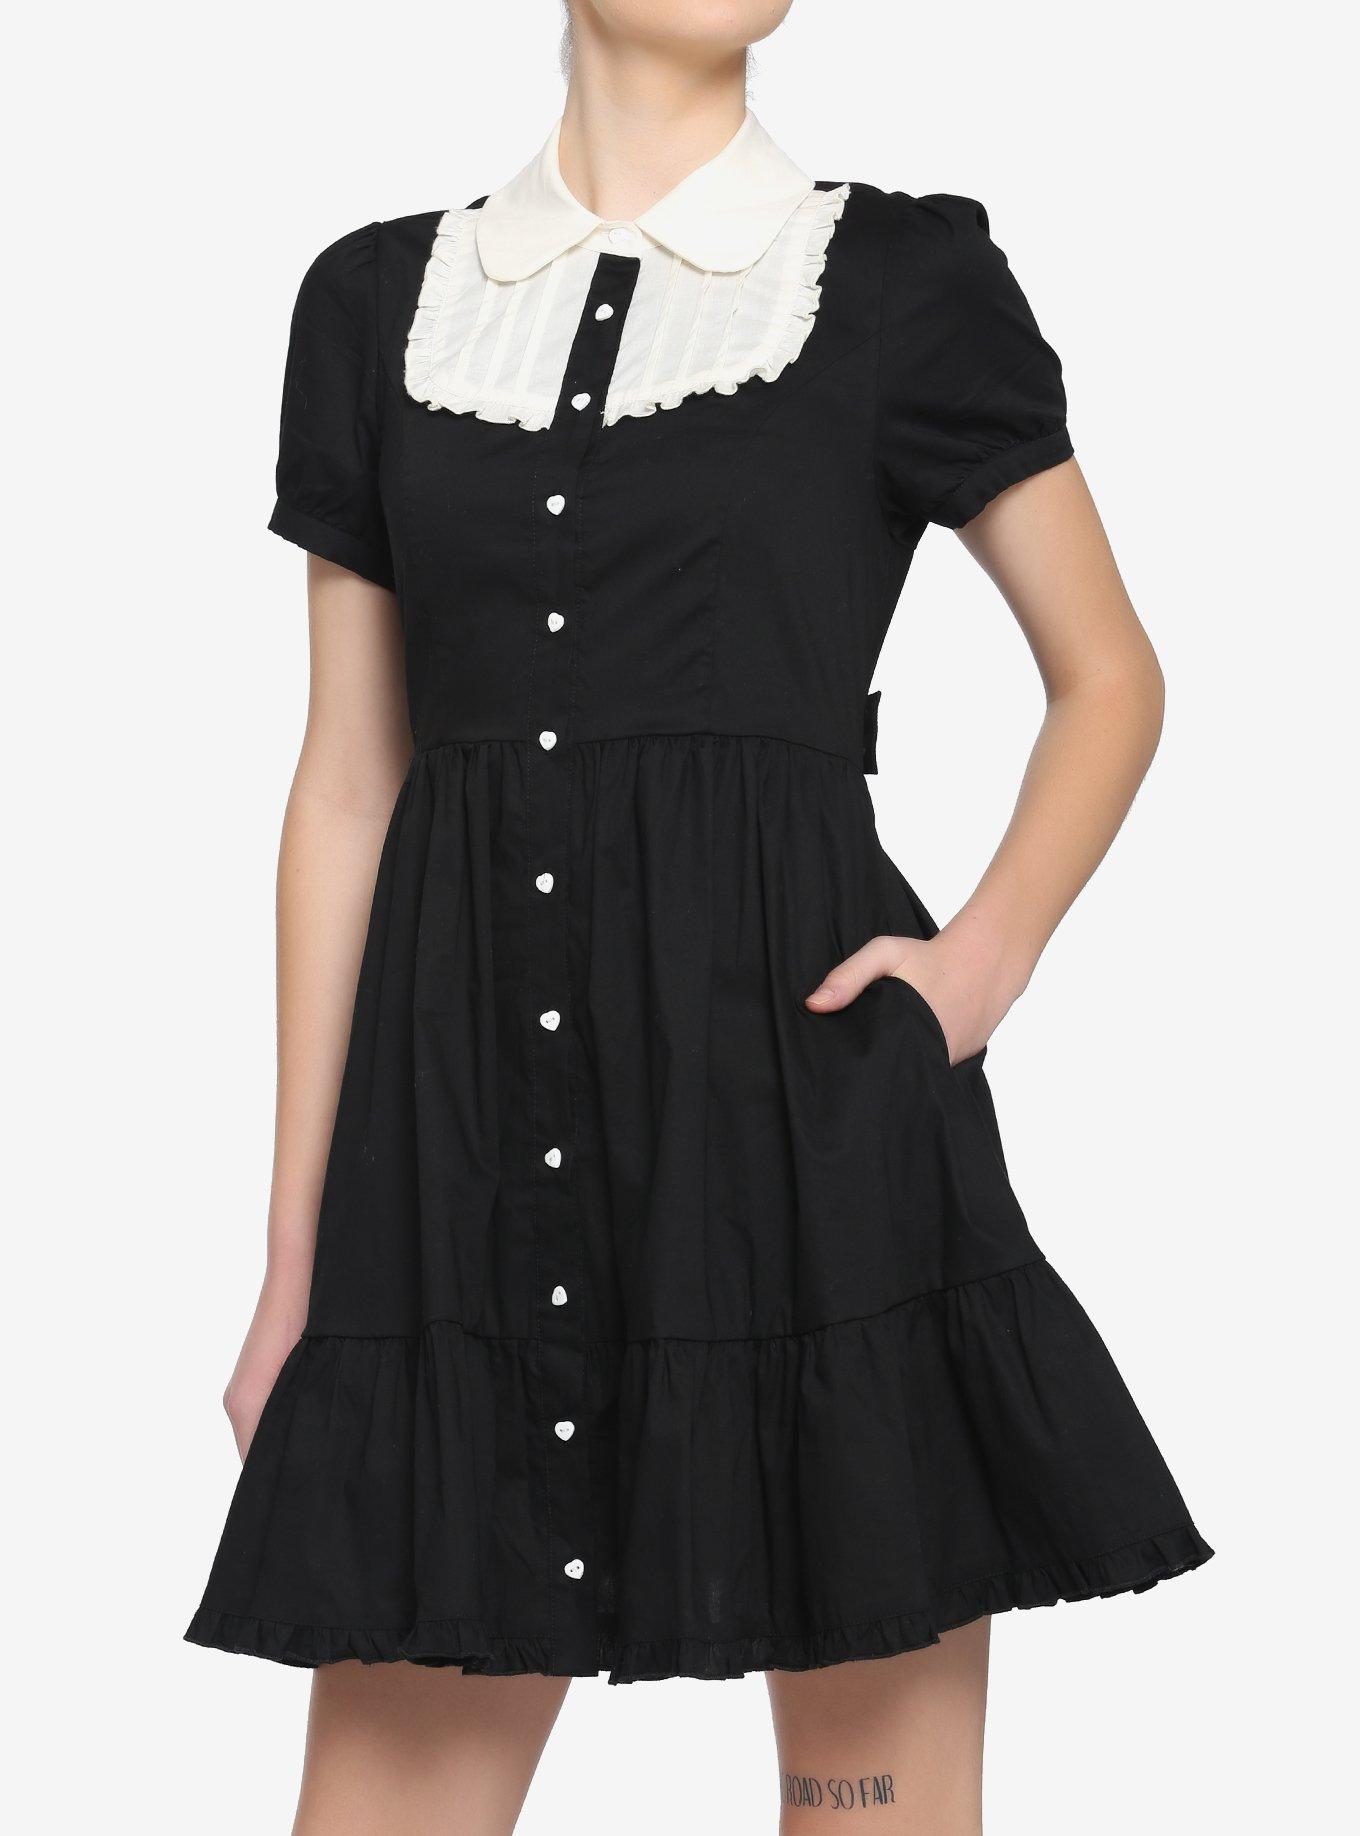 Black & White Peter Pan Collar Dress